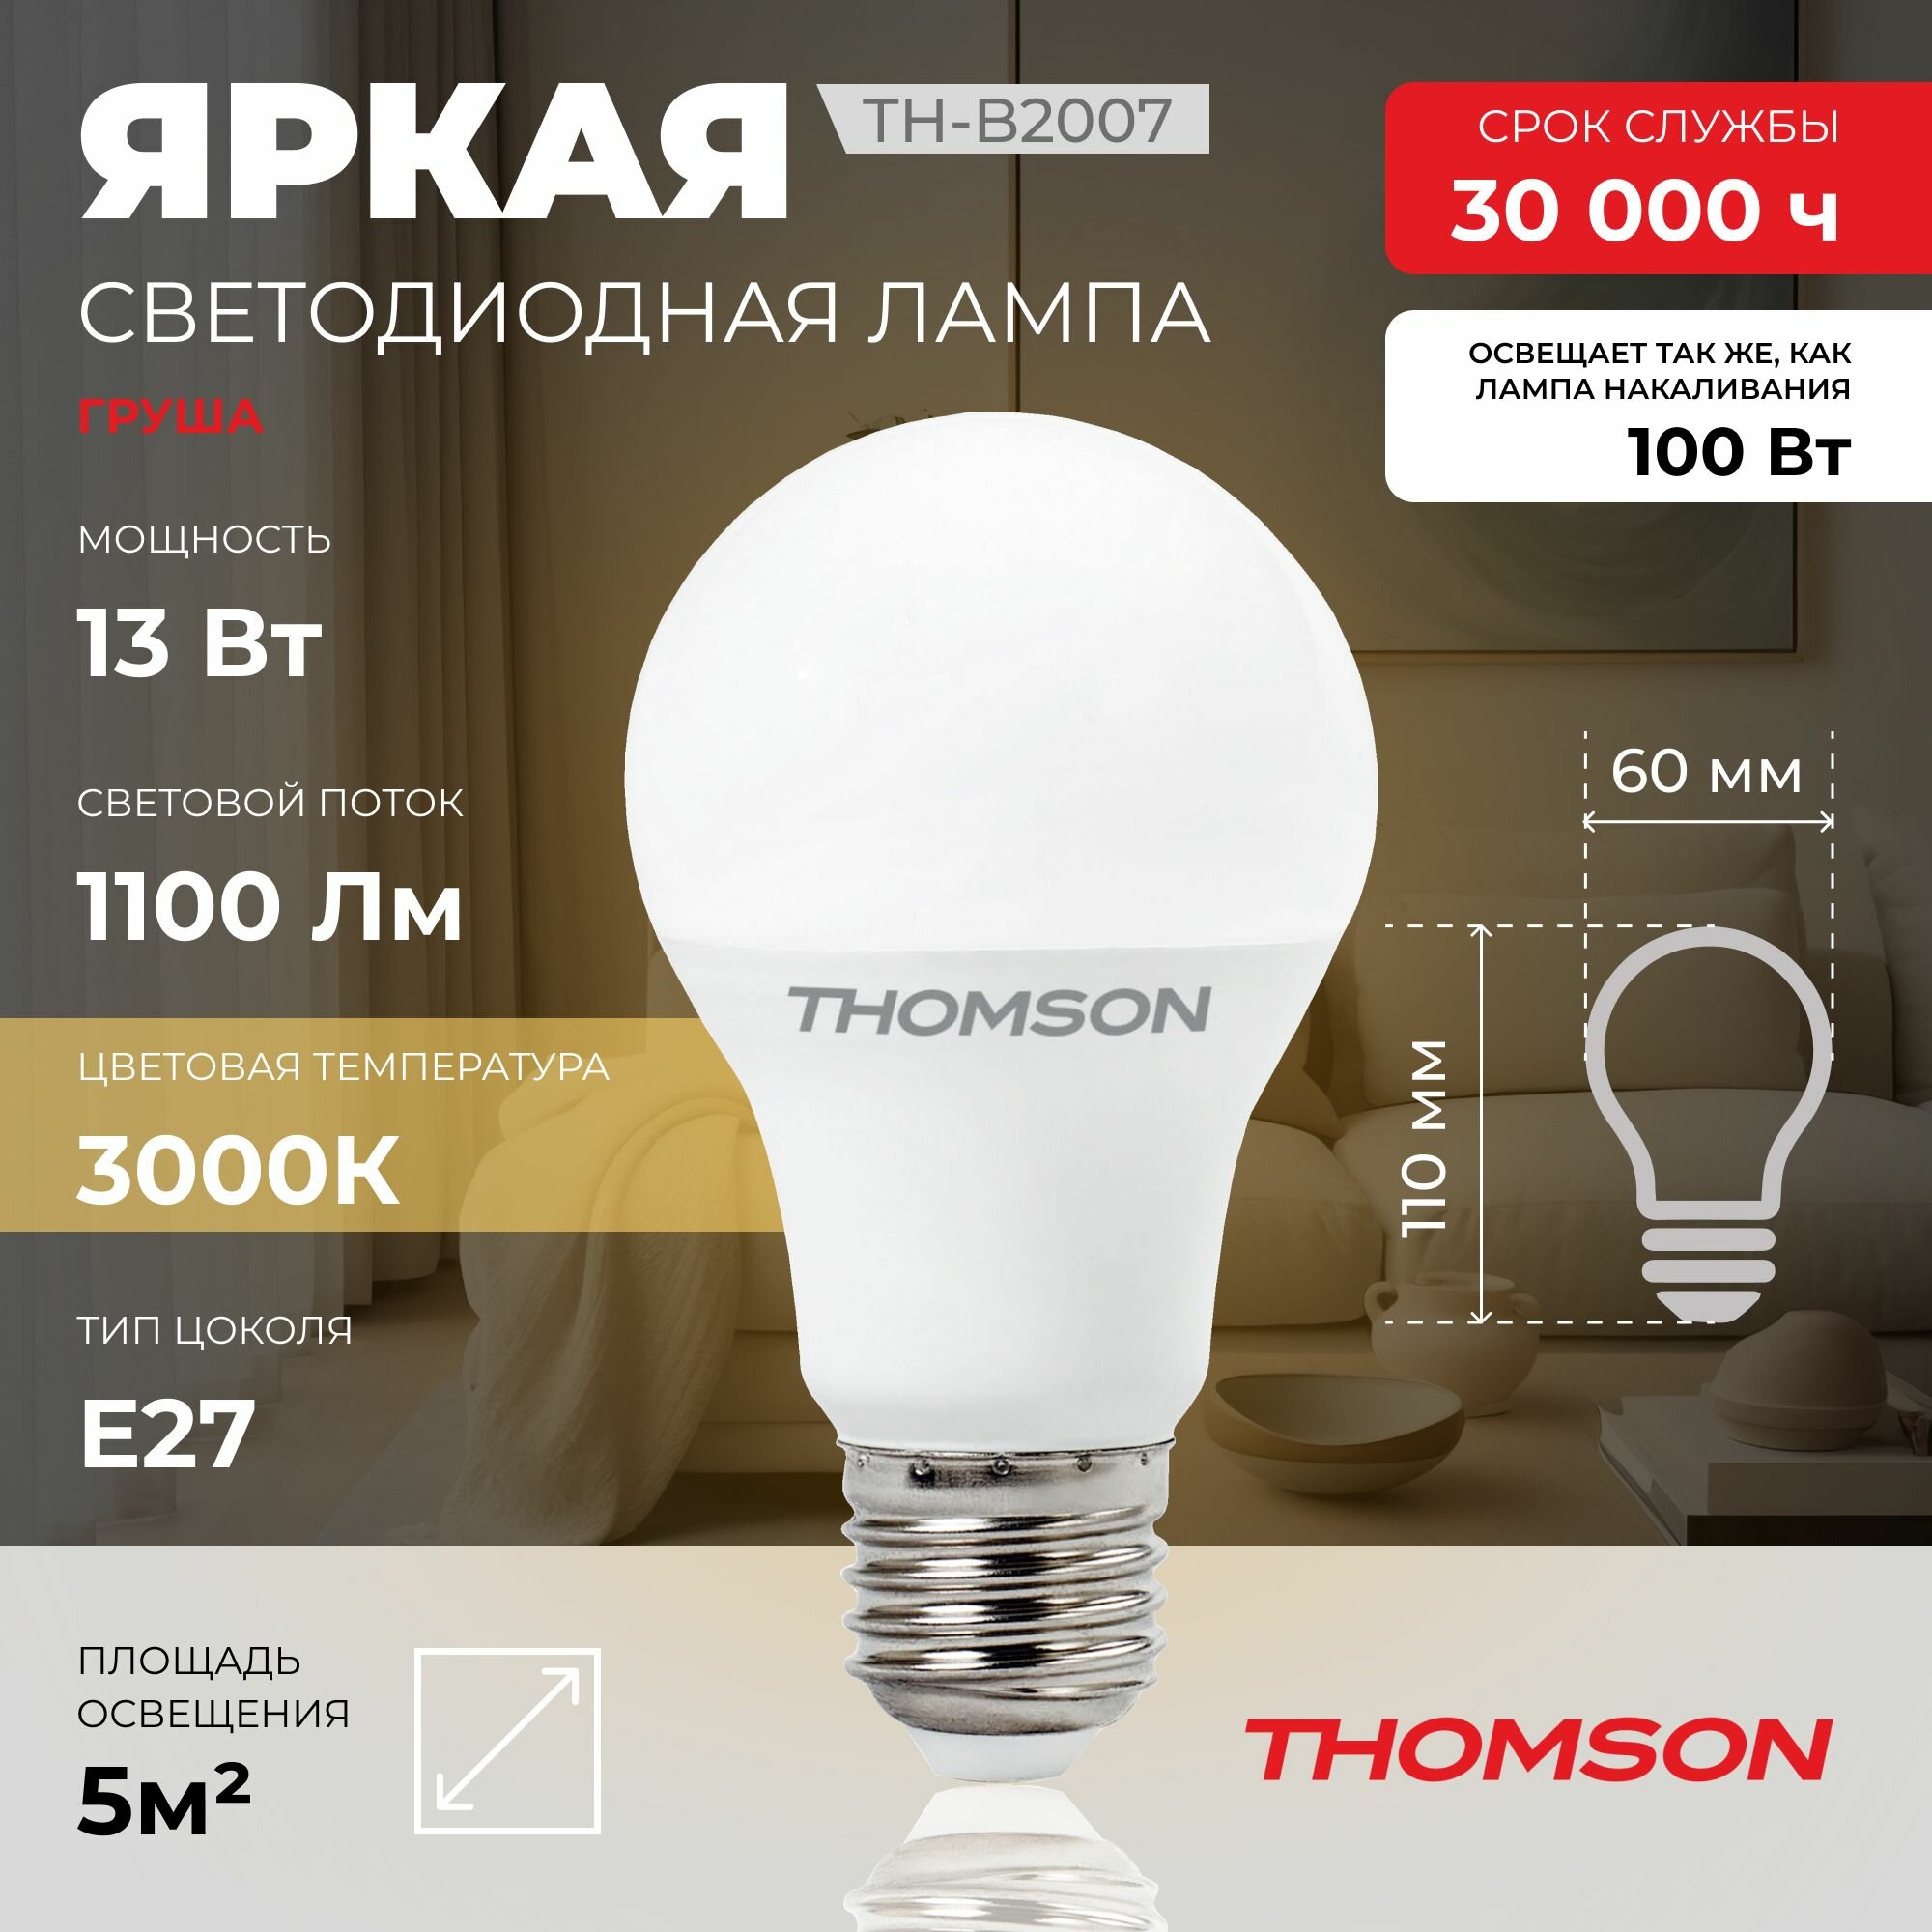 Лампочка Thomson TH-B2007 13 Вт, E27, 3000К, груша, теплый белый свет